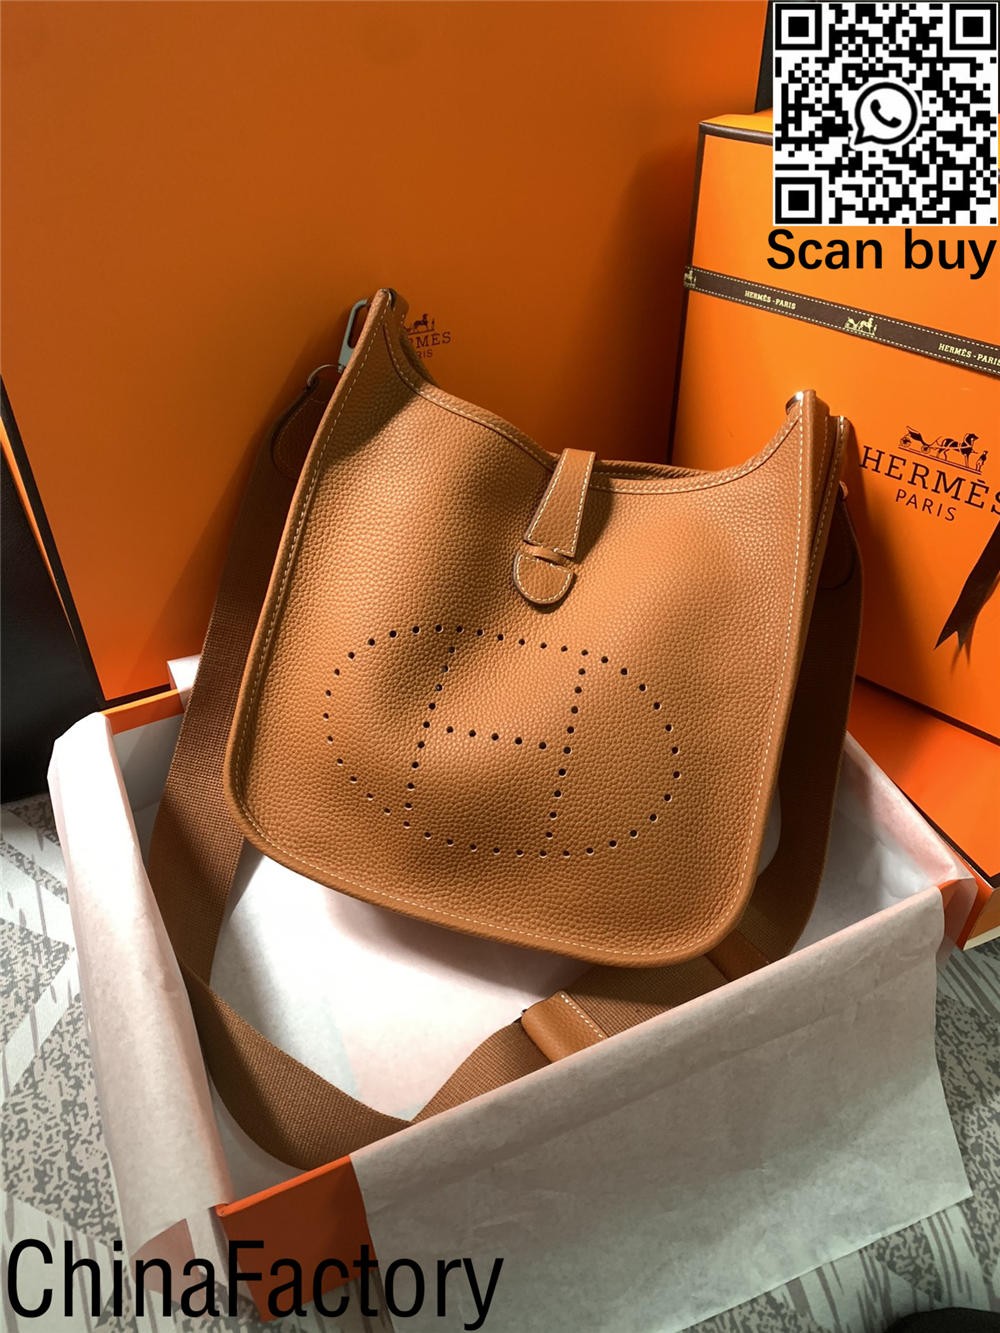 คู่มือกระเป๋าจำลองยอดนิยม 8 อันดับแรกของ Hermes (อัปเดต 2022) - ร้านค้าออนไลน์กระเป๋าปลอม Louis Vuitton คุณภาพดีที่สุดนักออกแบบกระเป๋าจำลอง ru